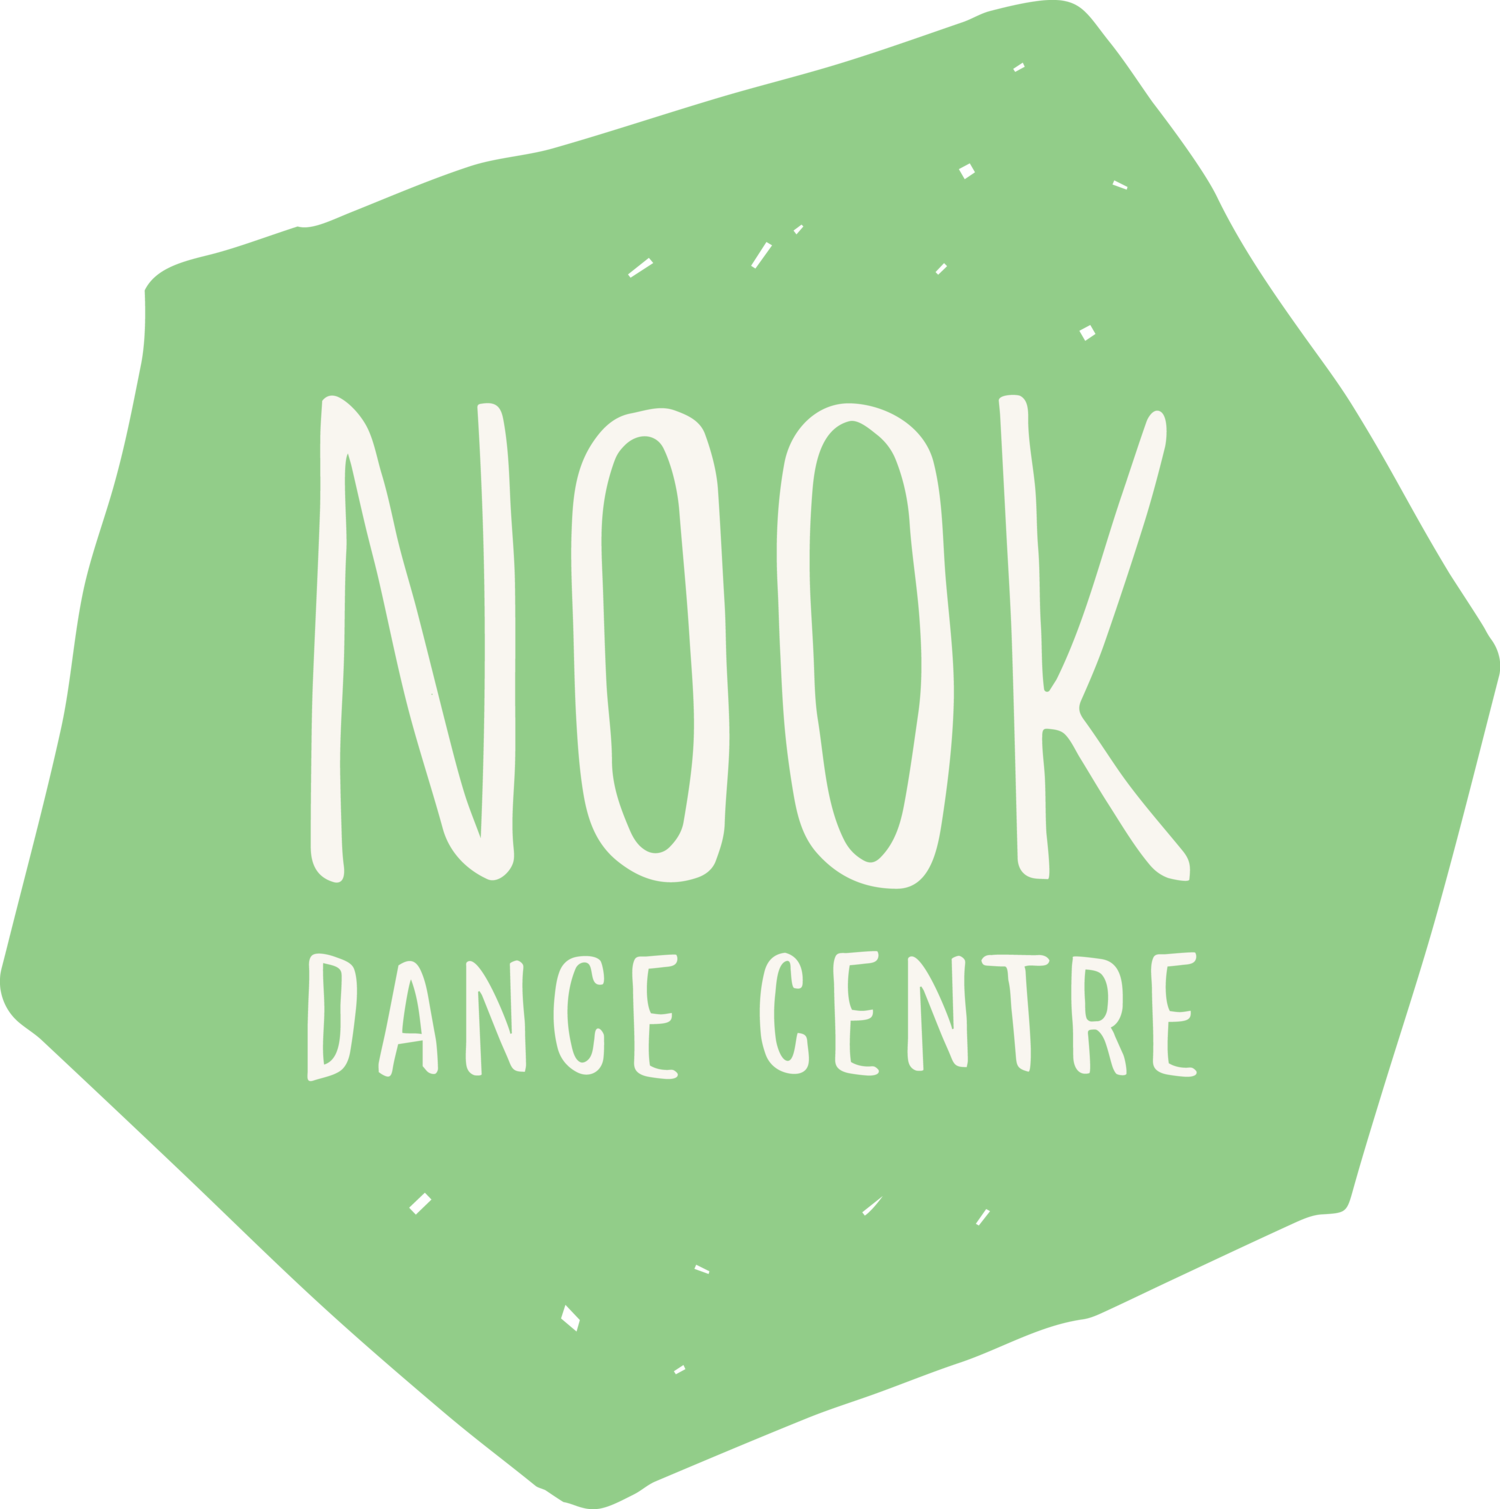 Nook Dance Centre